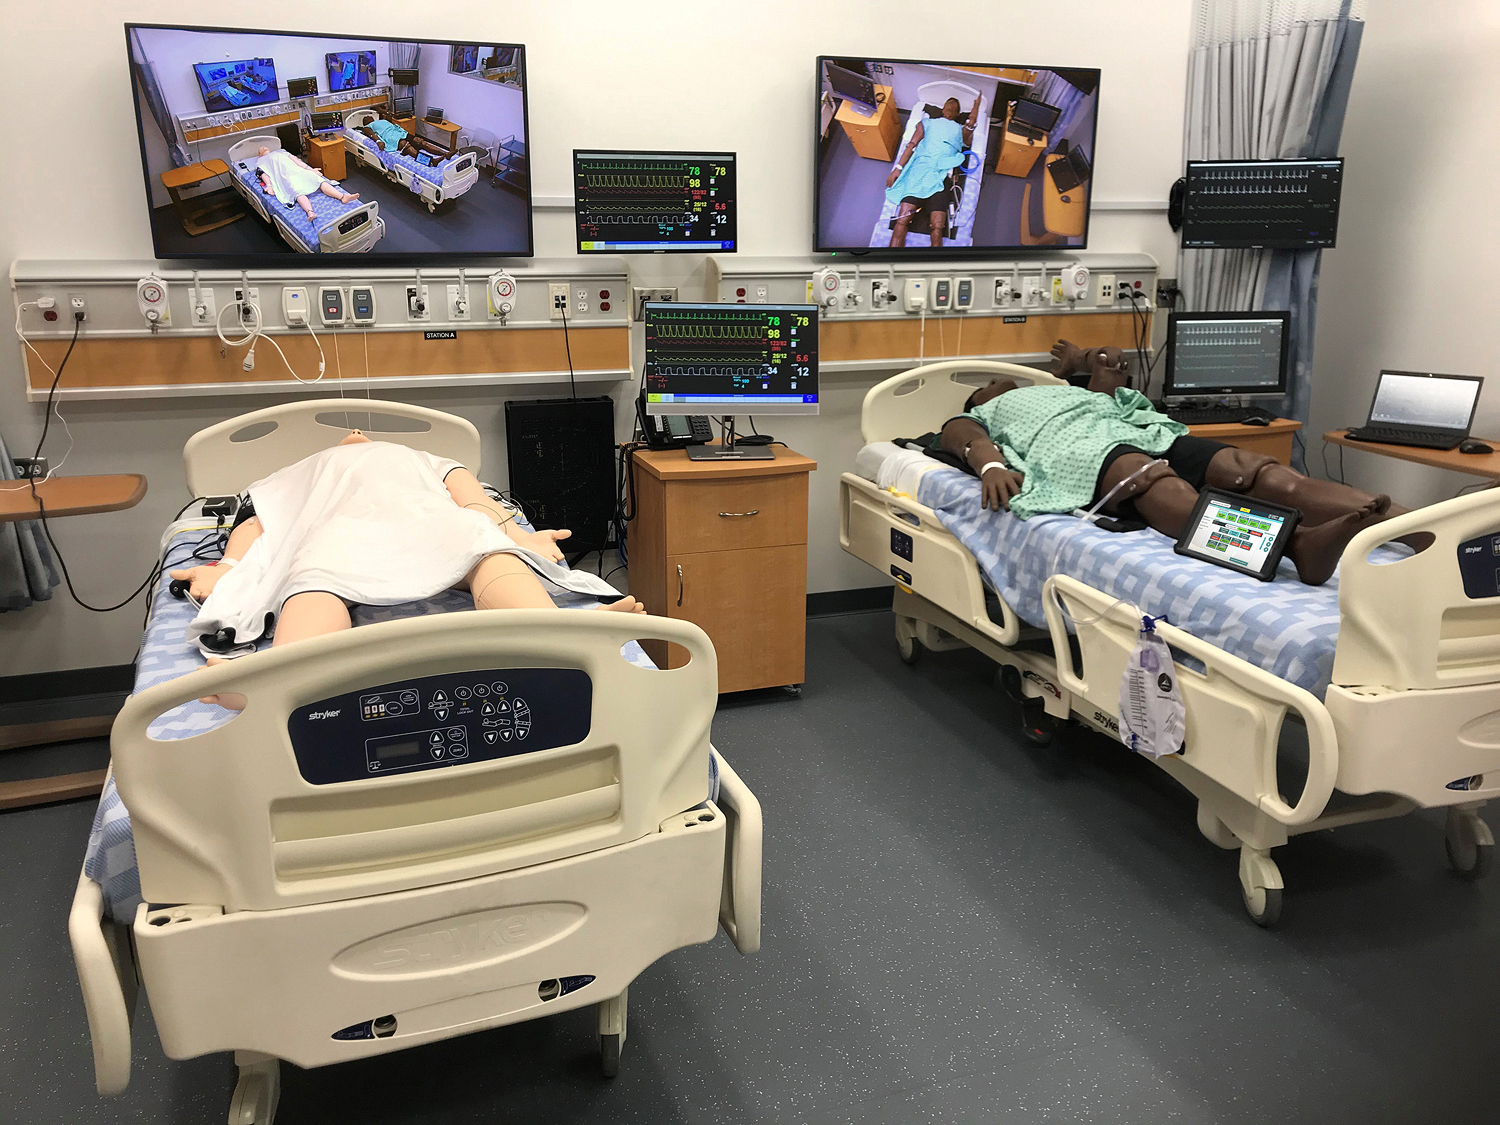 Les entrées HDMI placées sur la tête de lit et le mur offrent une connectivité audiovisuelle pour le simulateur de patient, les équipements médicaux, les ordinateurs, et les sources mobiles. Les encodeurs NAV E 101 sont alimentés via PoE+, libérant ainsi des prises électriques pour ces équipements standard de la station.